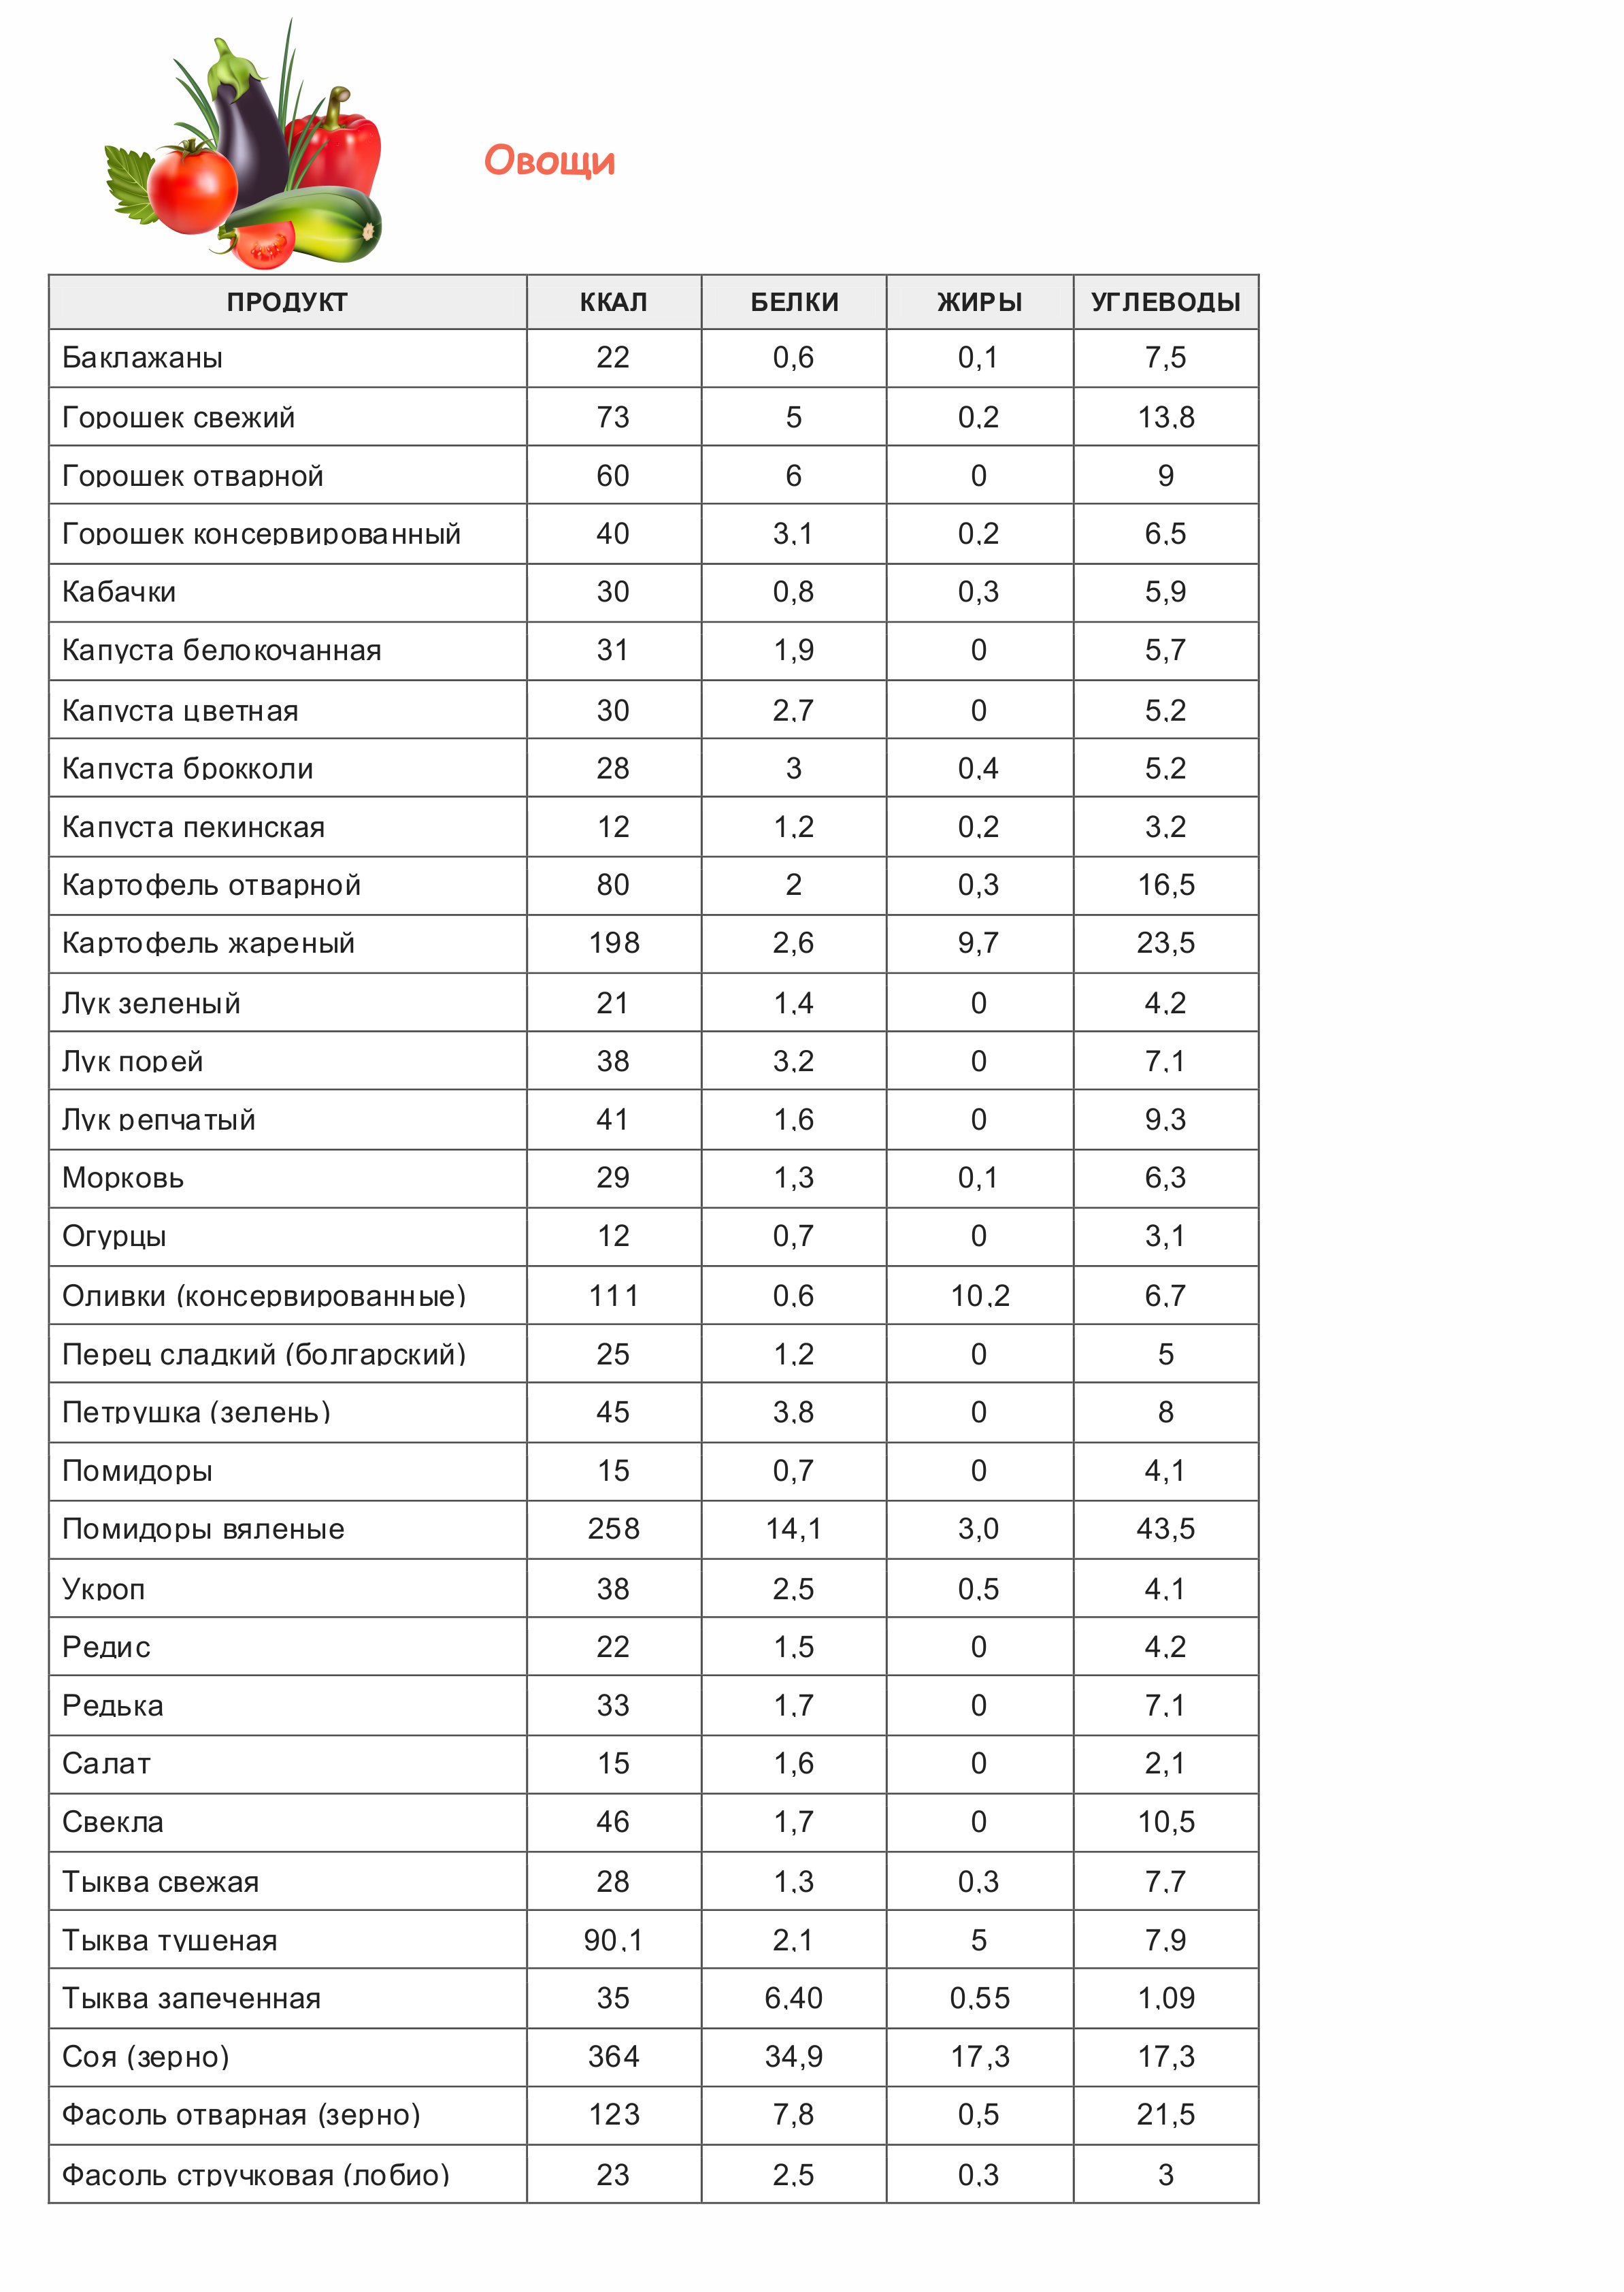 Полная таблица калорийности продуктов и готовых блюд - vkysnoprosto.ru